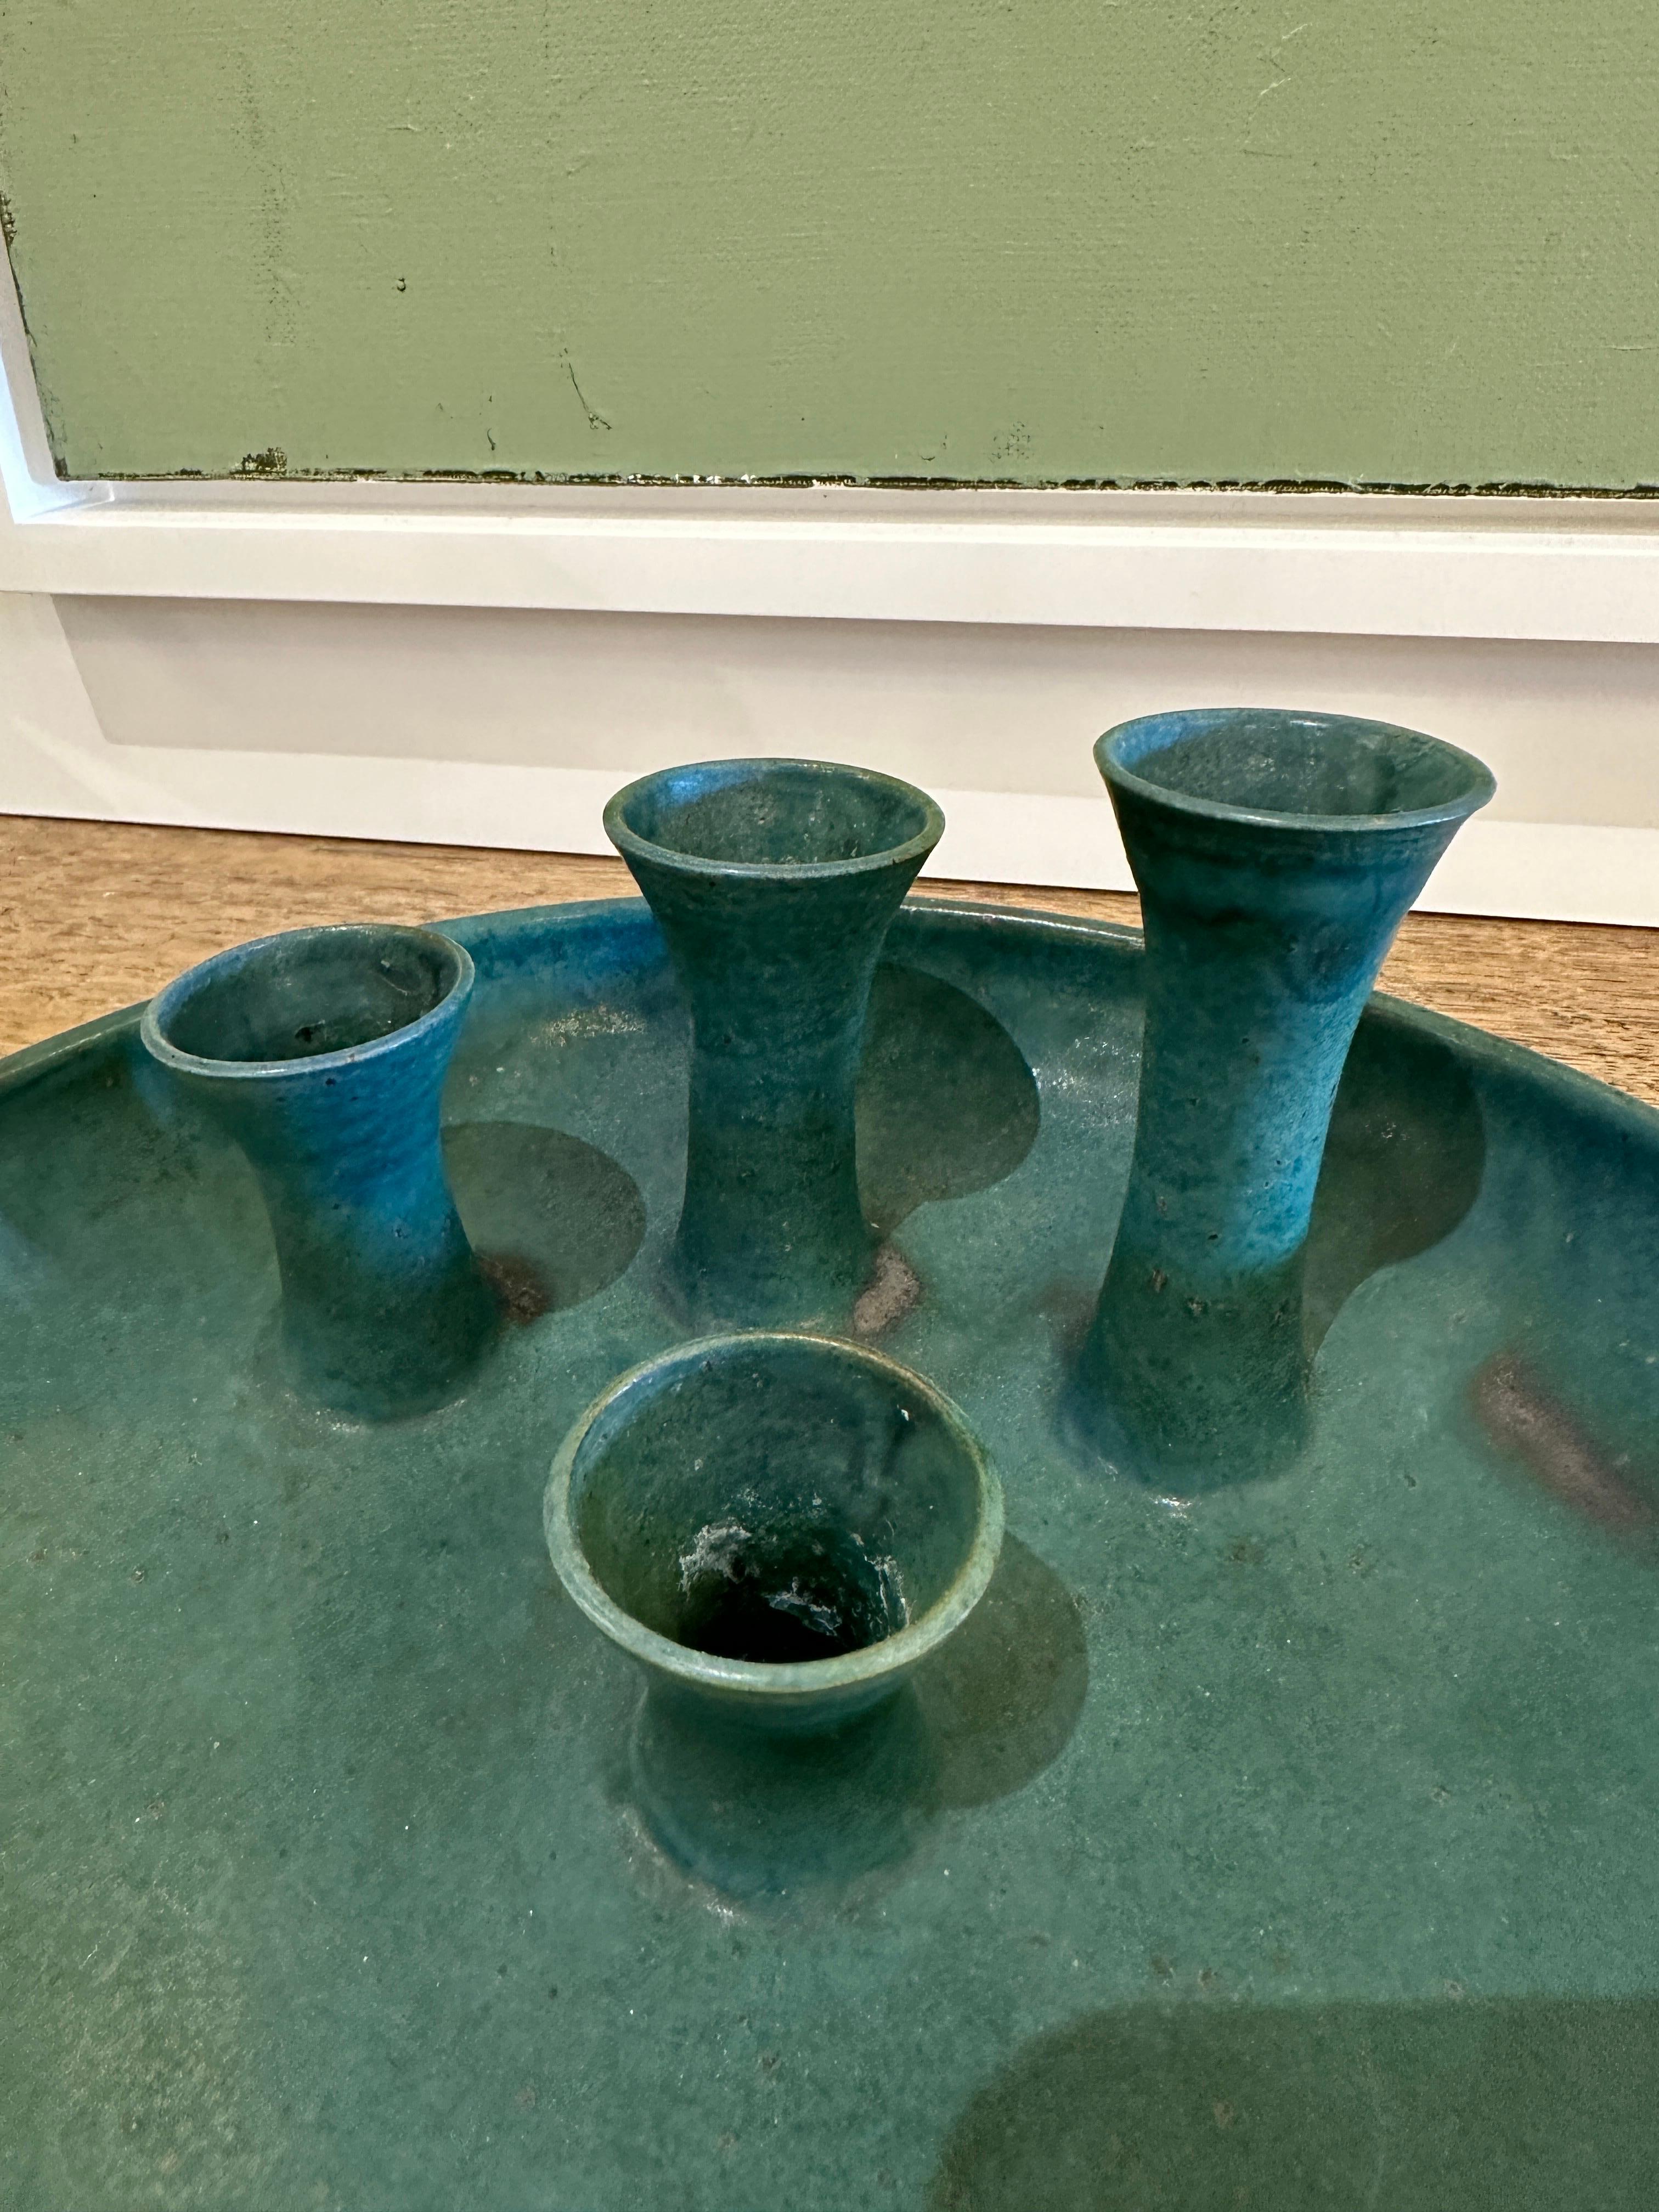 Diese hübsche westdeutsche Keramikschale und -vase enthält 4 unterschiedlich große Blütenknospenhalter. Die grüne, matte Oberfläche weist natürliche Farbvariationen auf. Wunderschöne Vintage-Keramik aus der westdeutschen Schule.  DIESER ARTIKEL